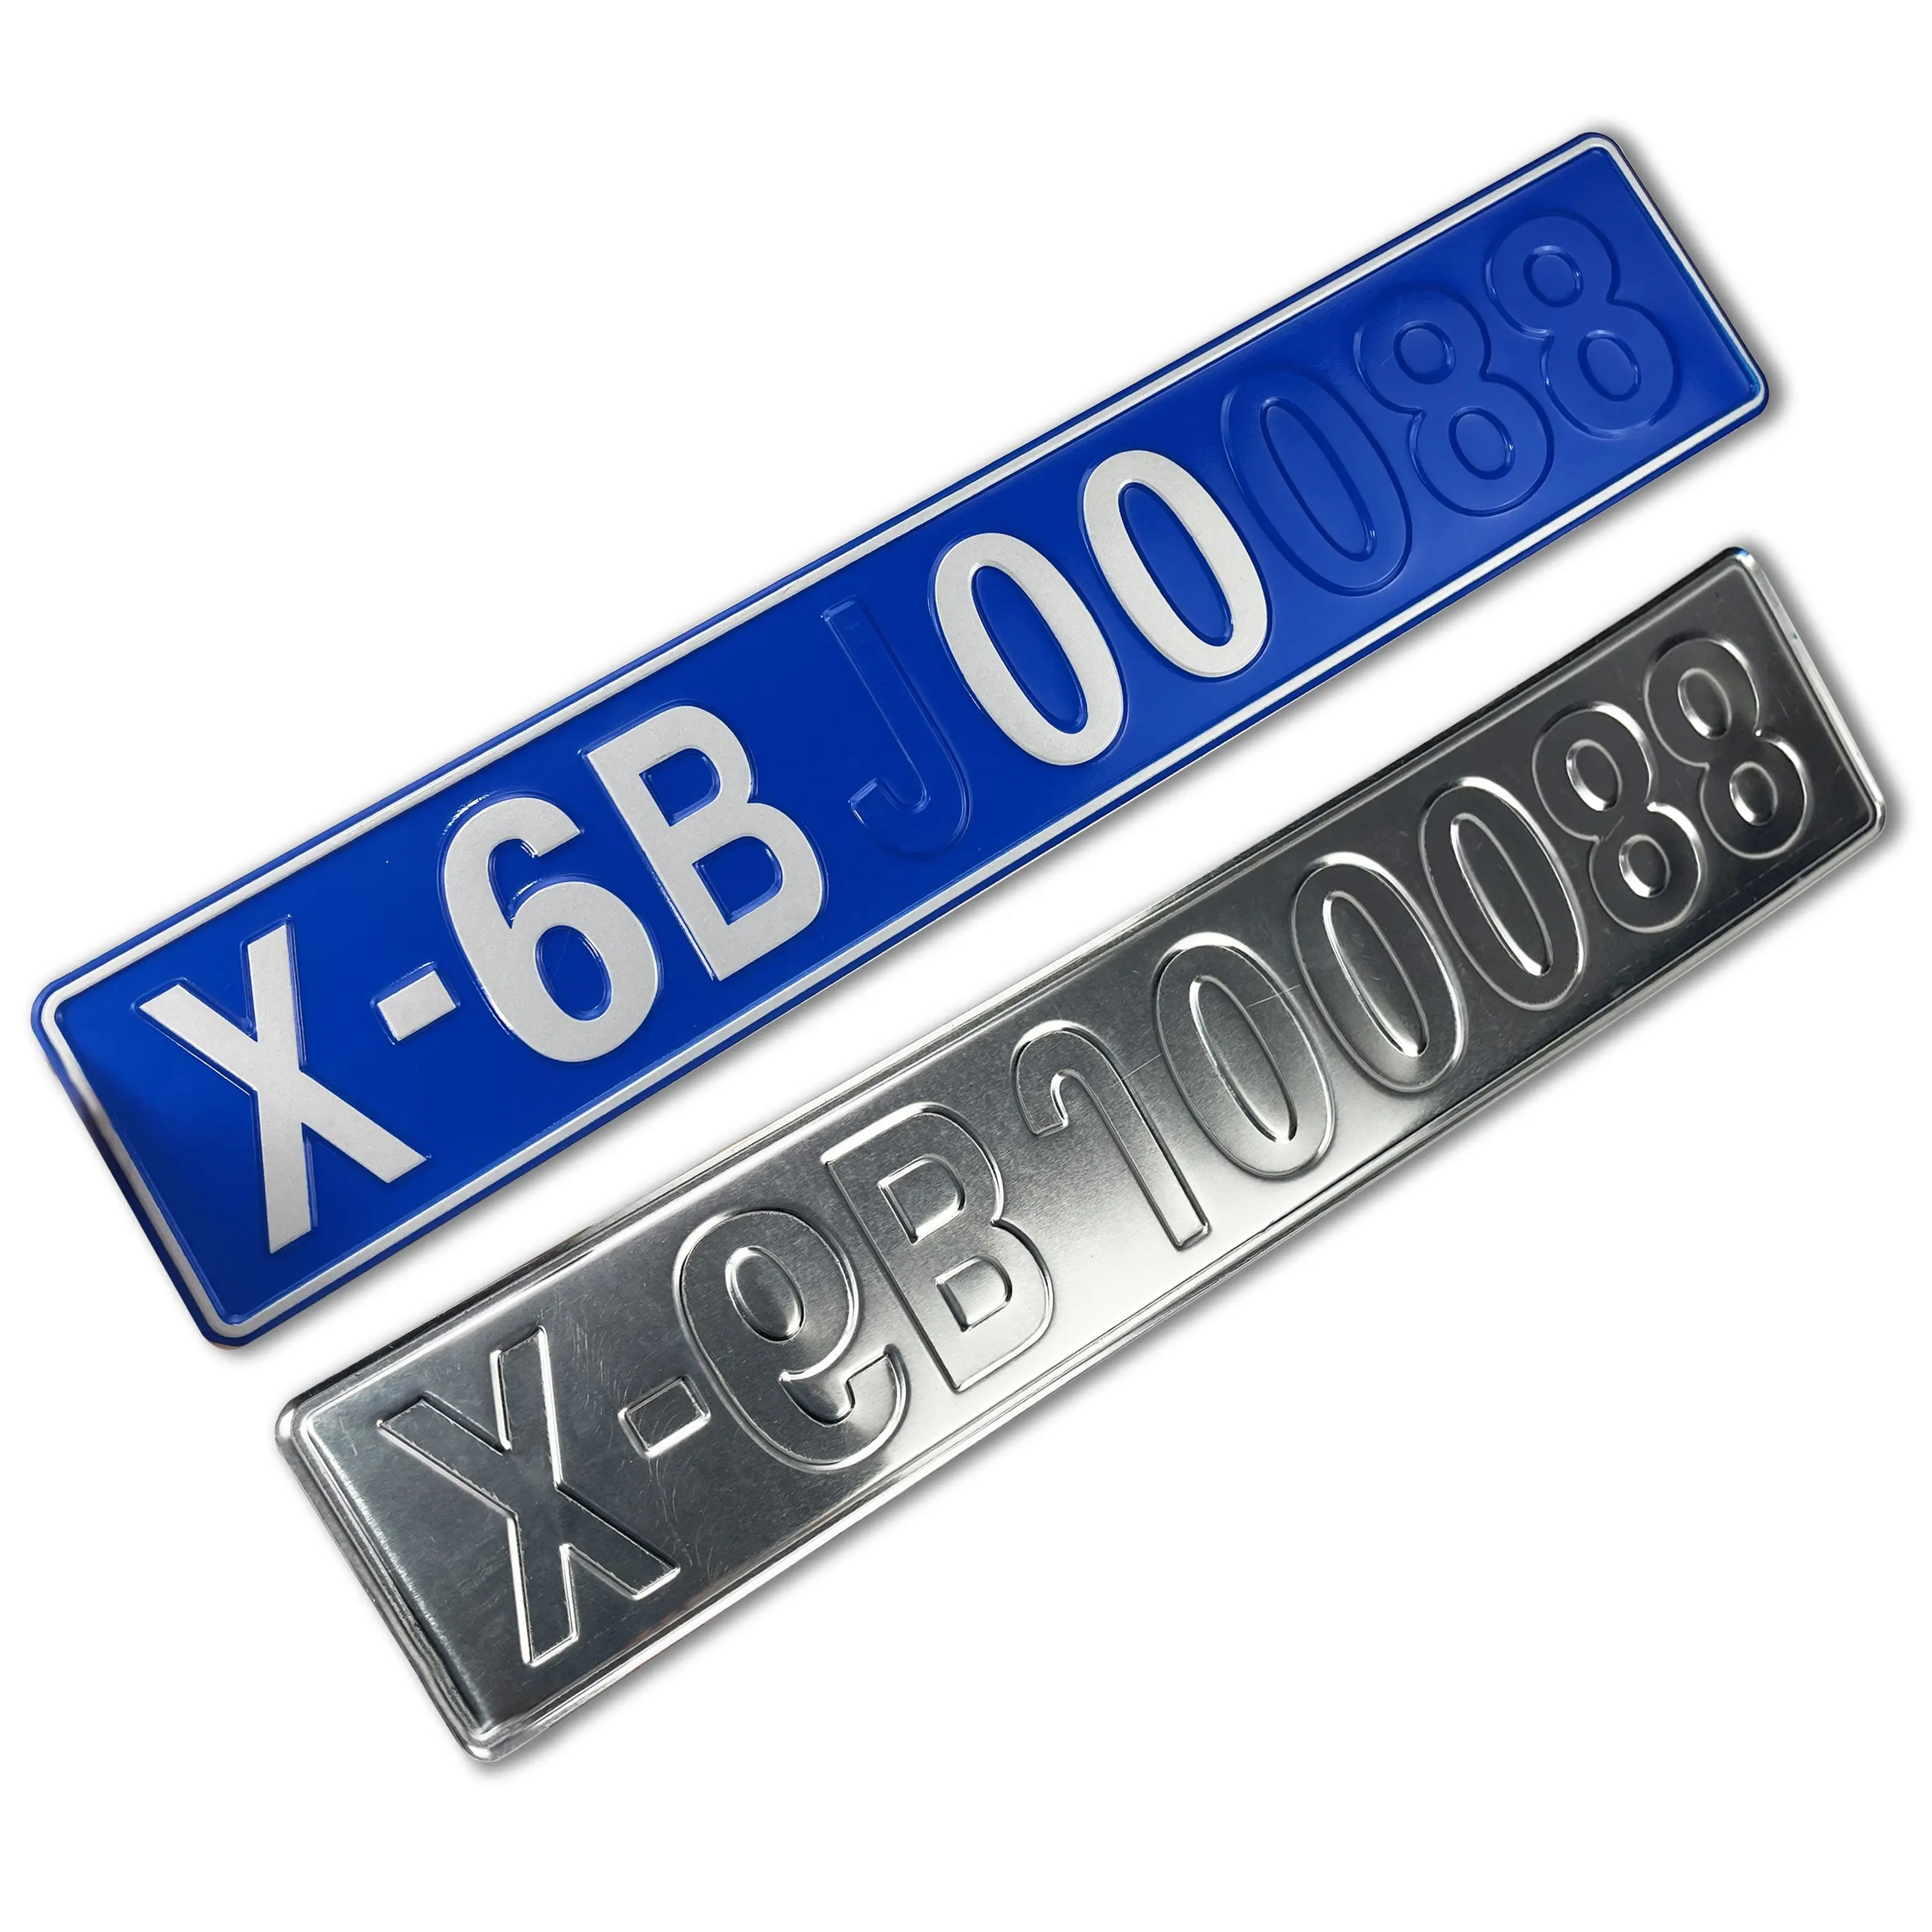 Placa de identificación en relieve 3D de Metal plateado personalizado, cepillado, placa de aluminio anodizado con logotipo, para matrícula de coche